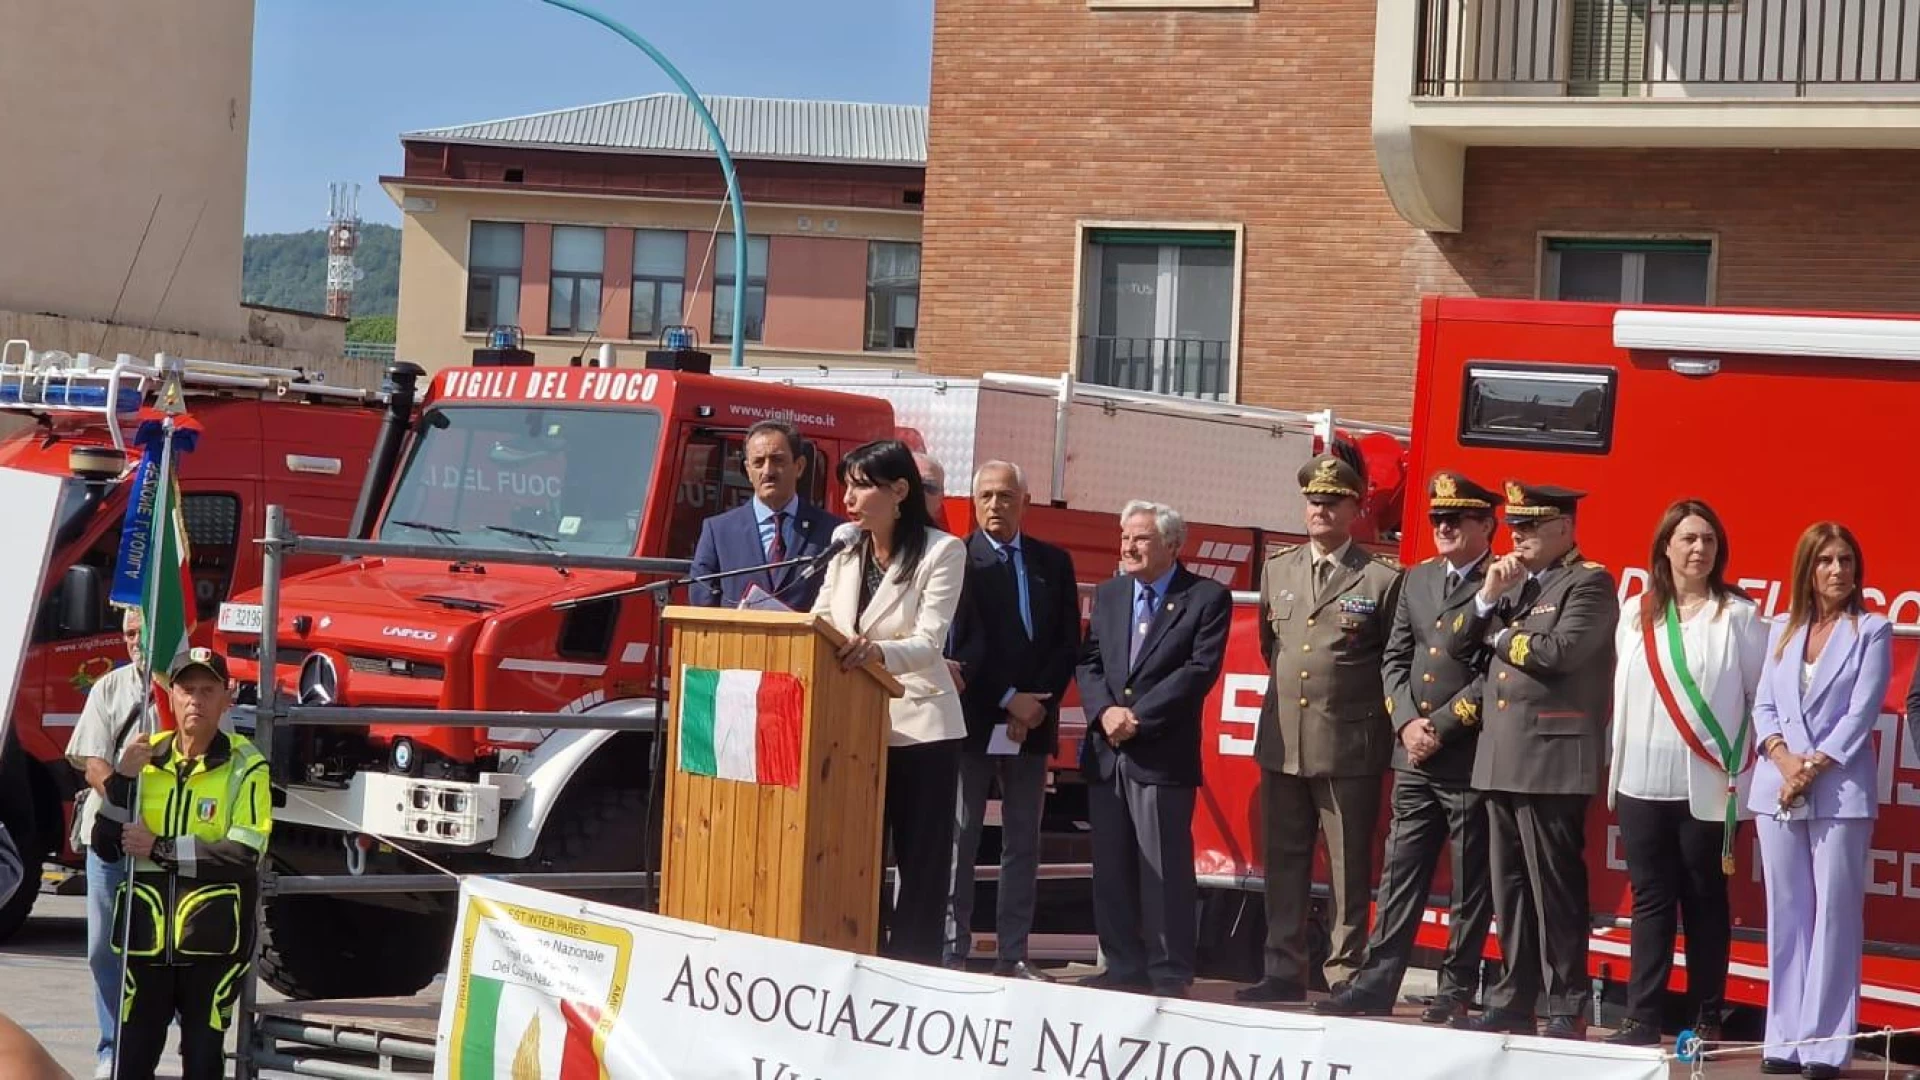 Raduno interregionale Associazione Nazionale Vigili del Fuoco , presenti i deputati molisani Lancellotta e Della Porta.